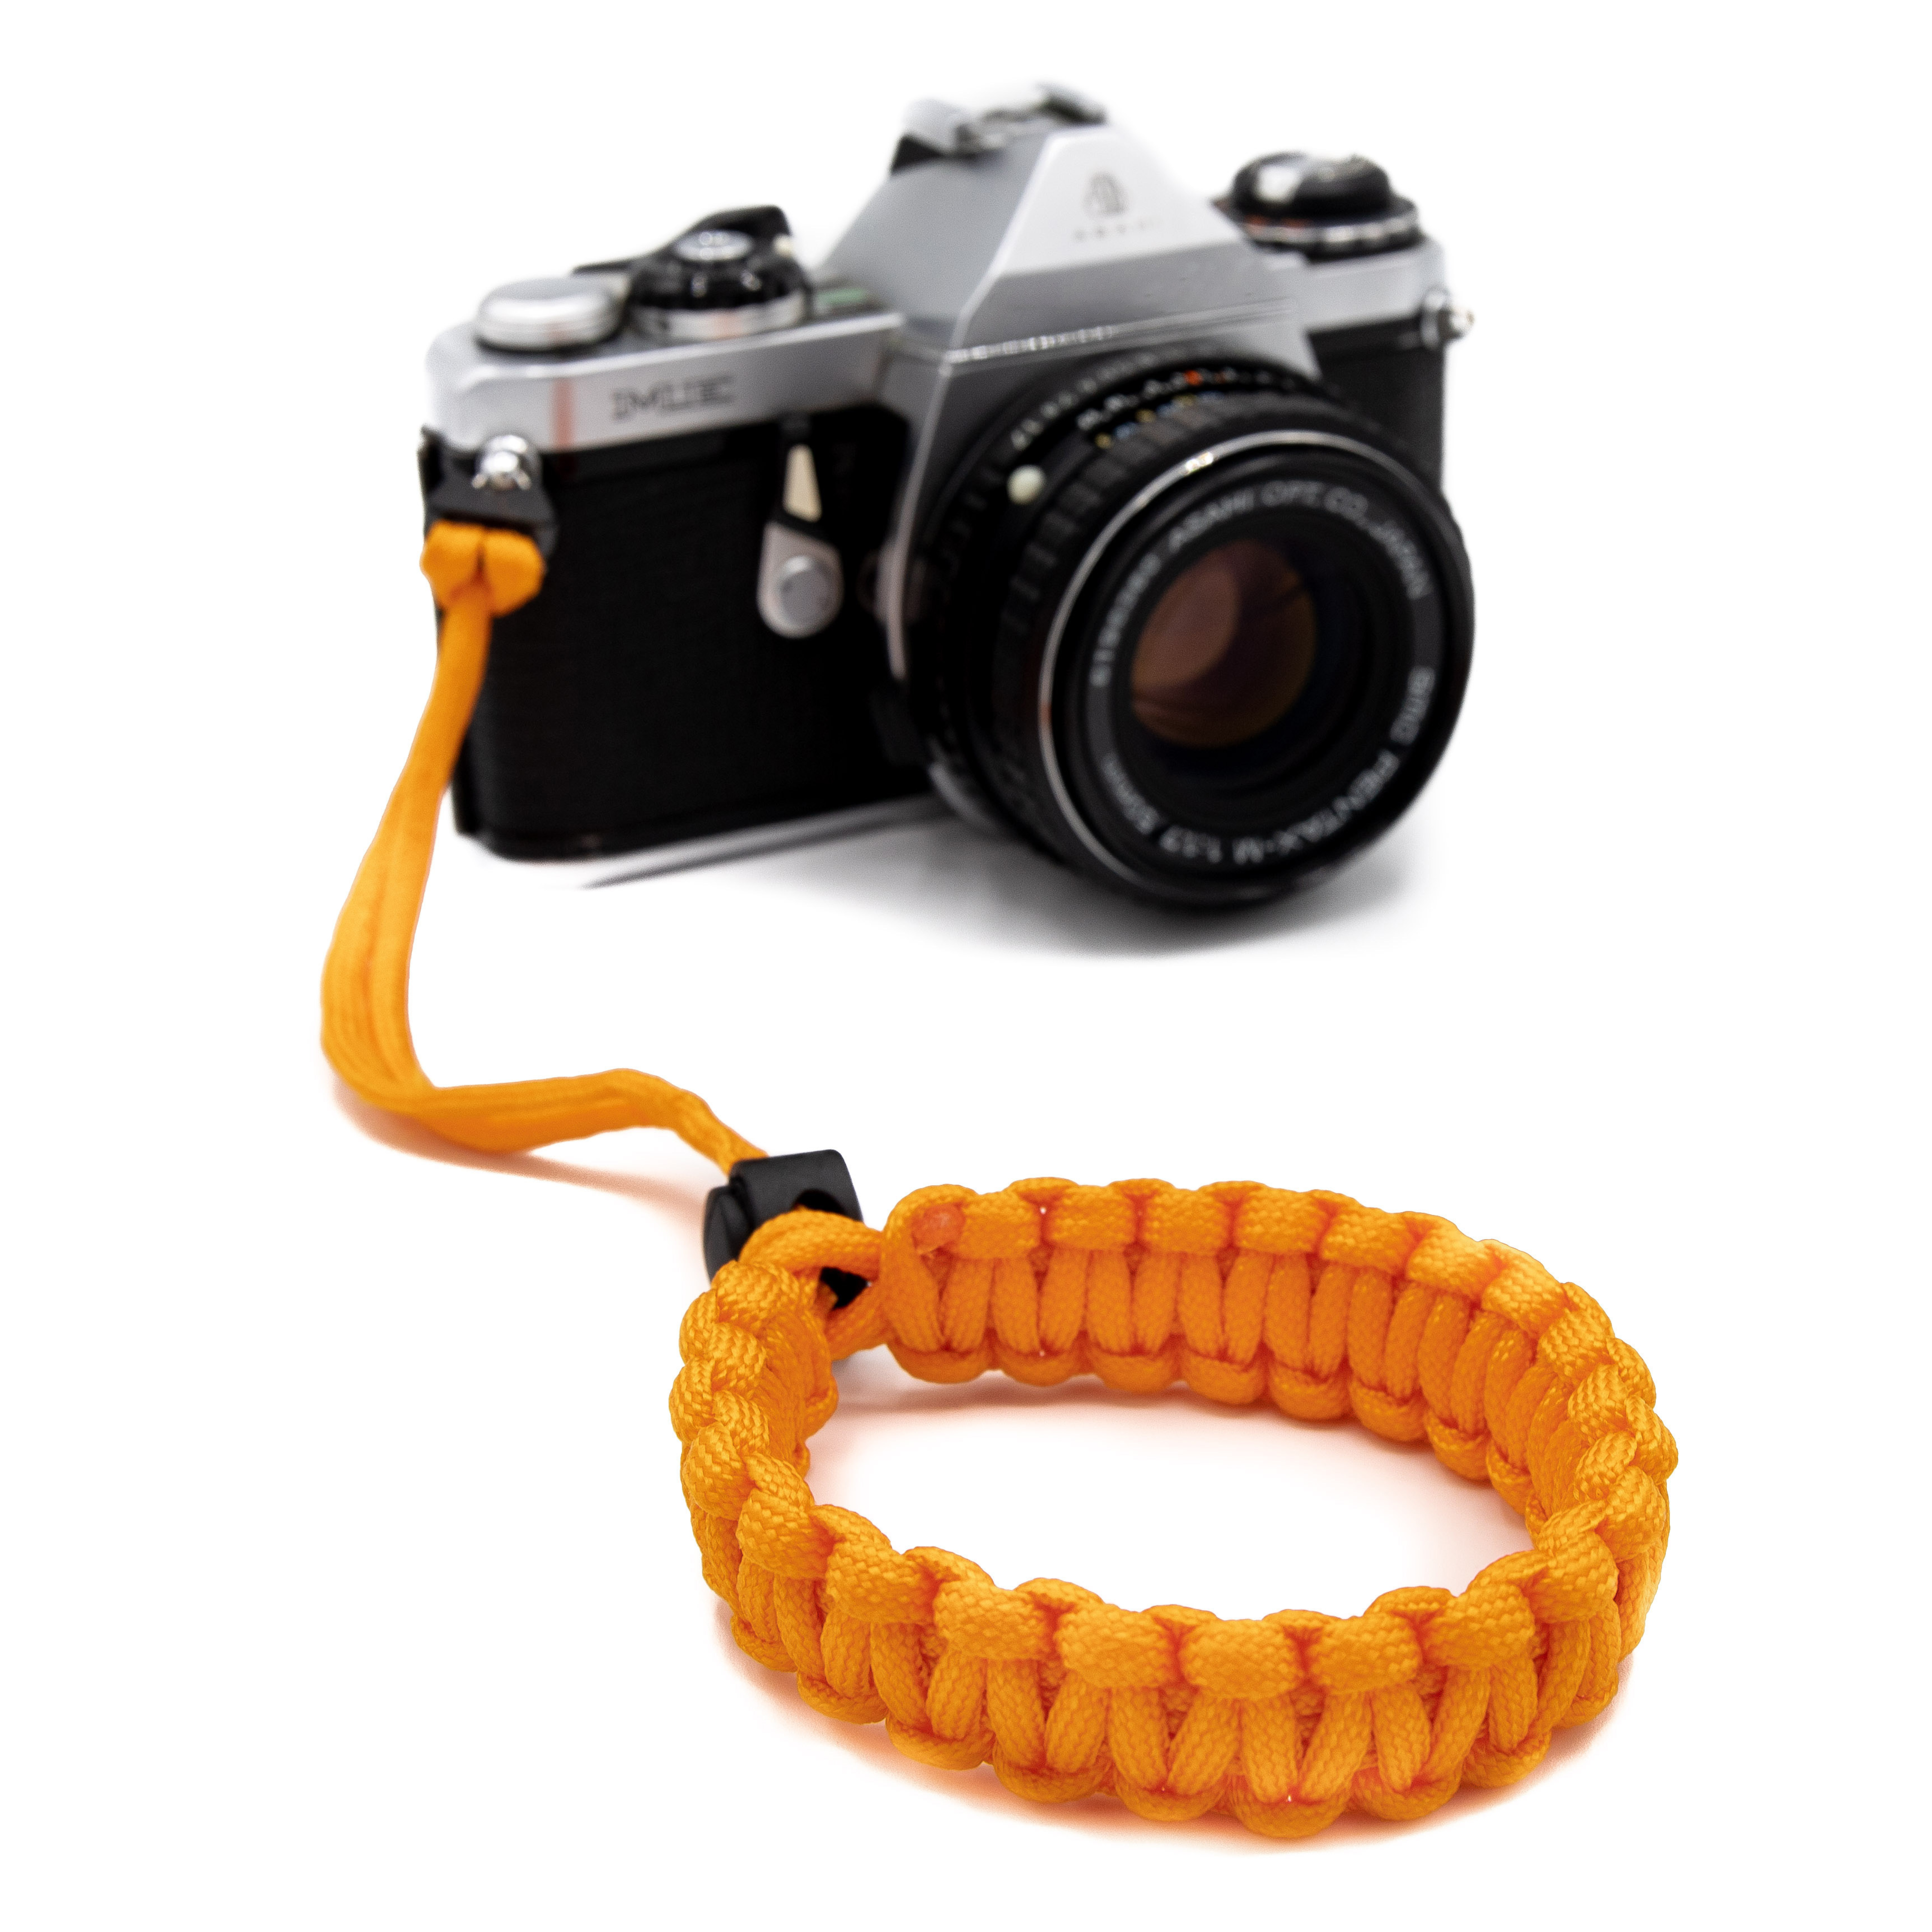 LENS-AID Kamera Handschlaufe aus Paracord fürs Handschlaufe, Kamera Orange Handgelenk